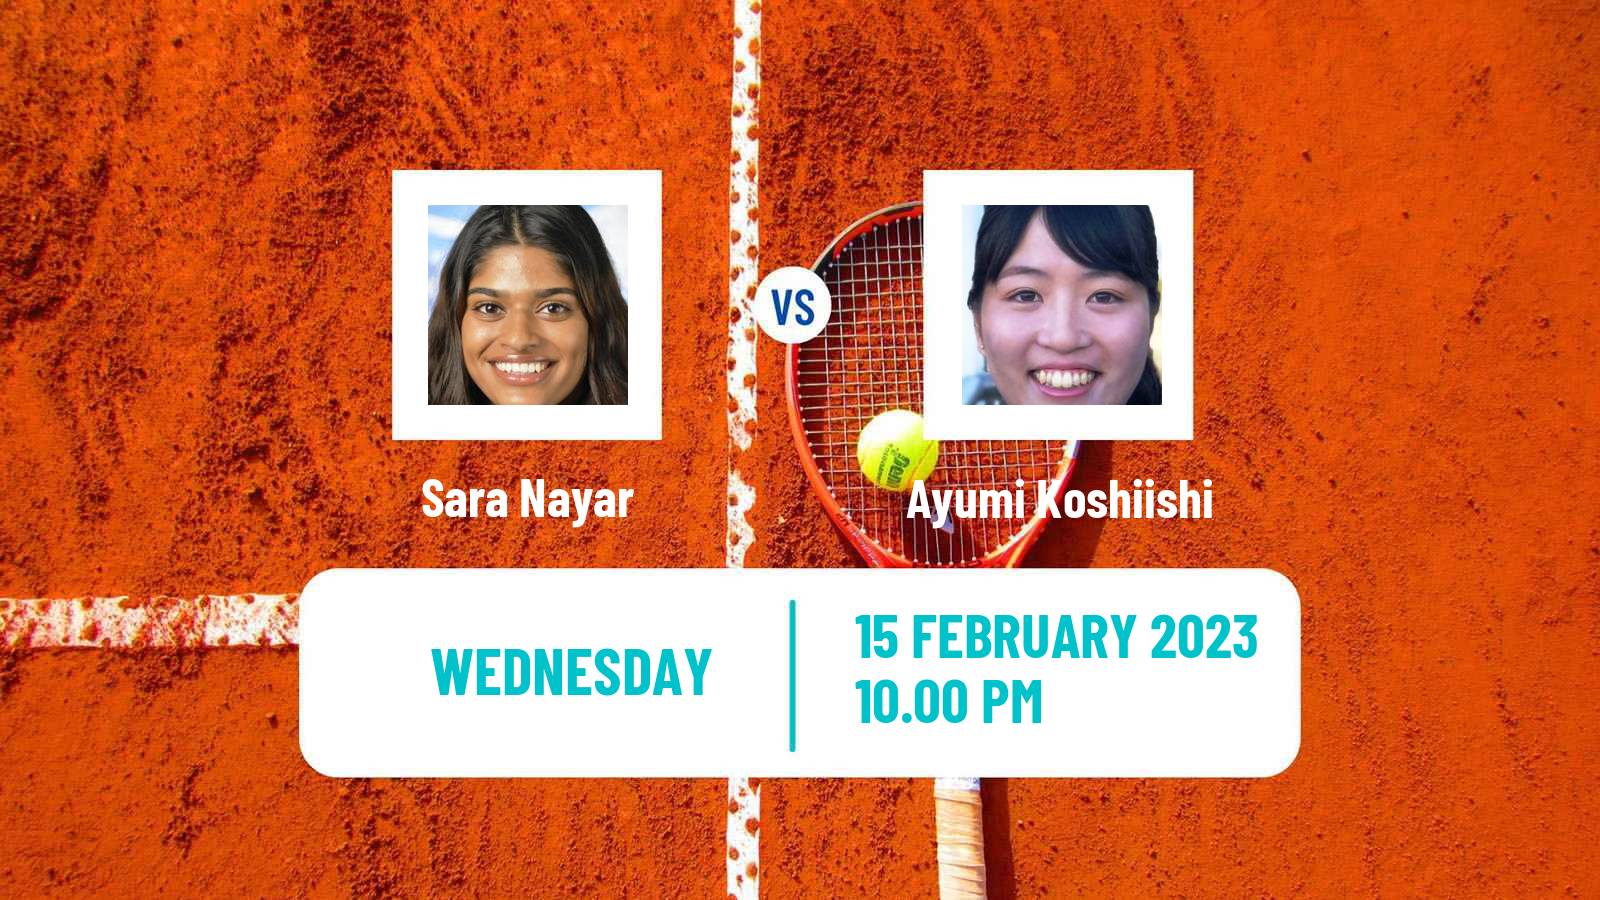 Tennis ITF Tournaments Sara Nayar - Ayumi Koshiishi